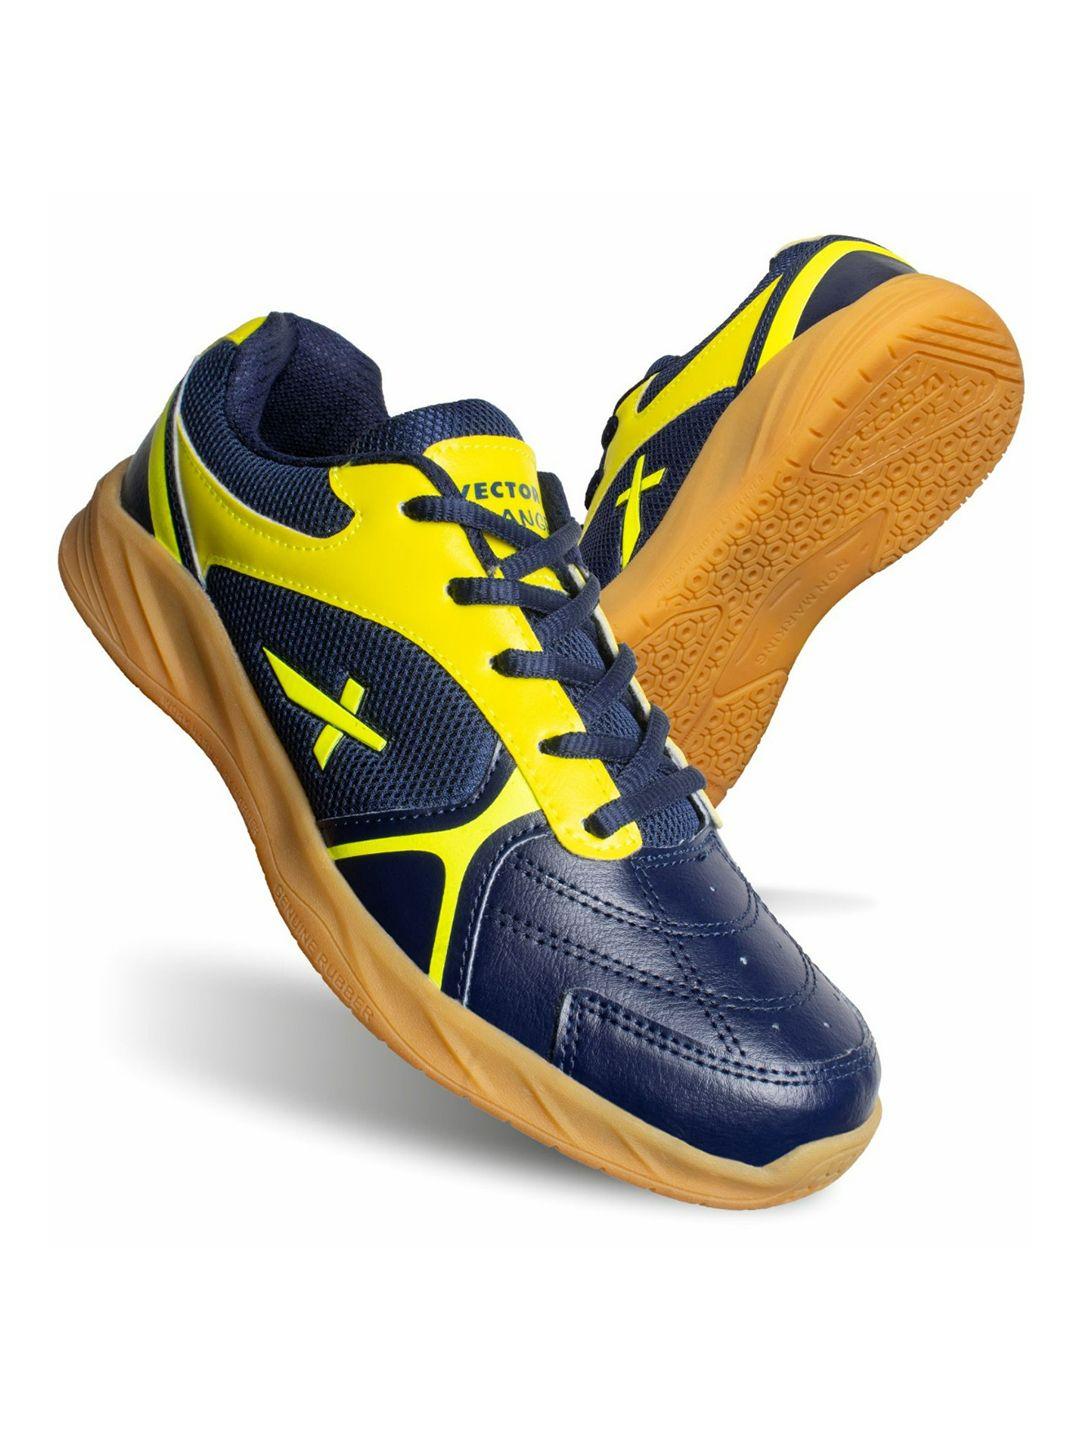 VECTOR X Men Non-Marking Badminton Shoes